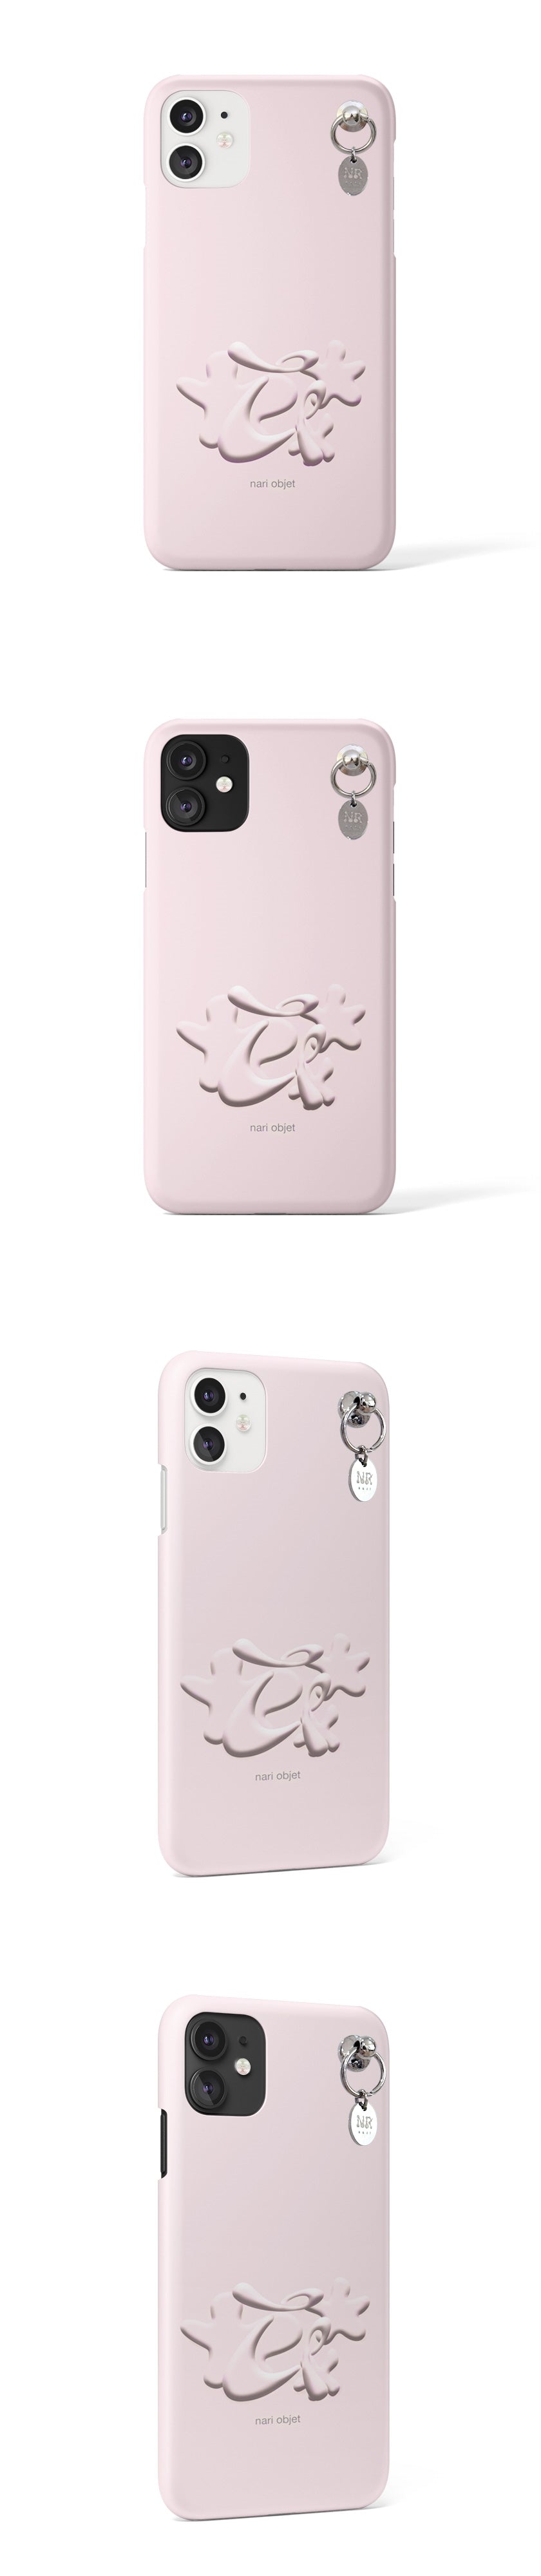 Nari iconic hard phone case (pink/matte)